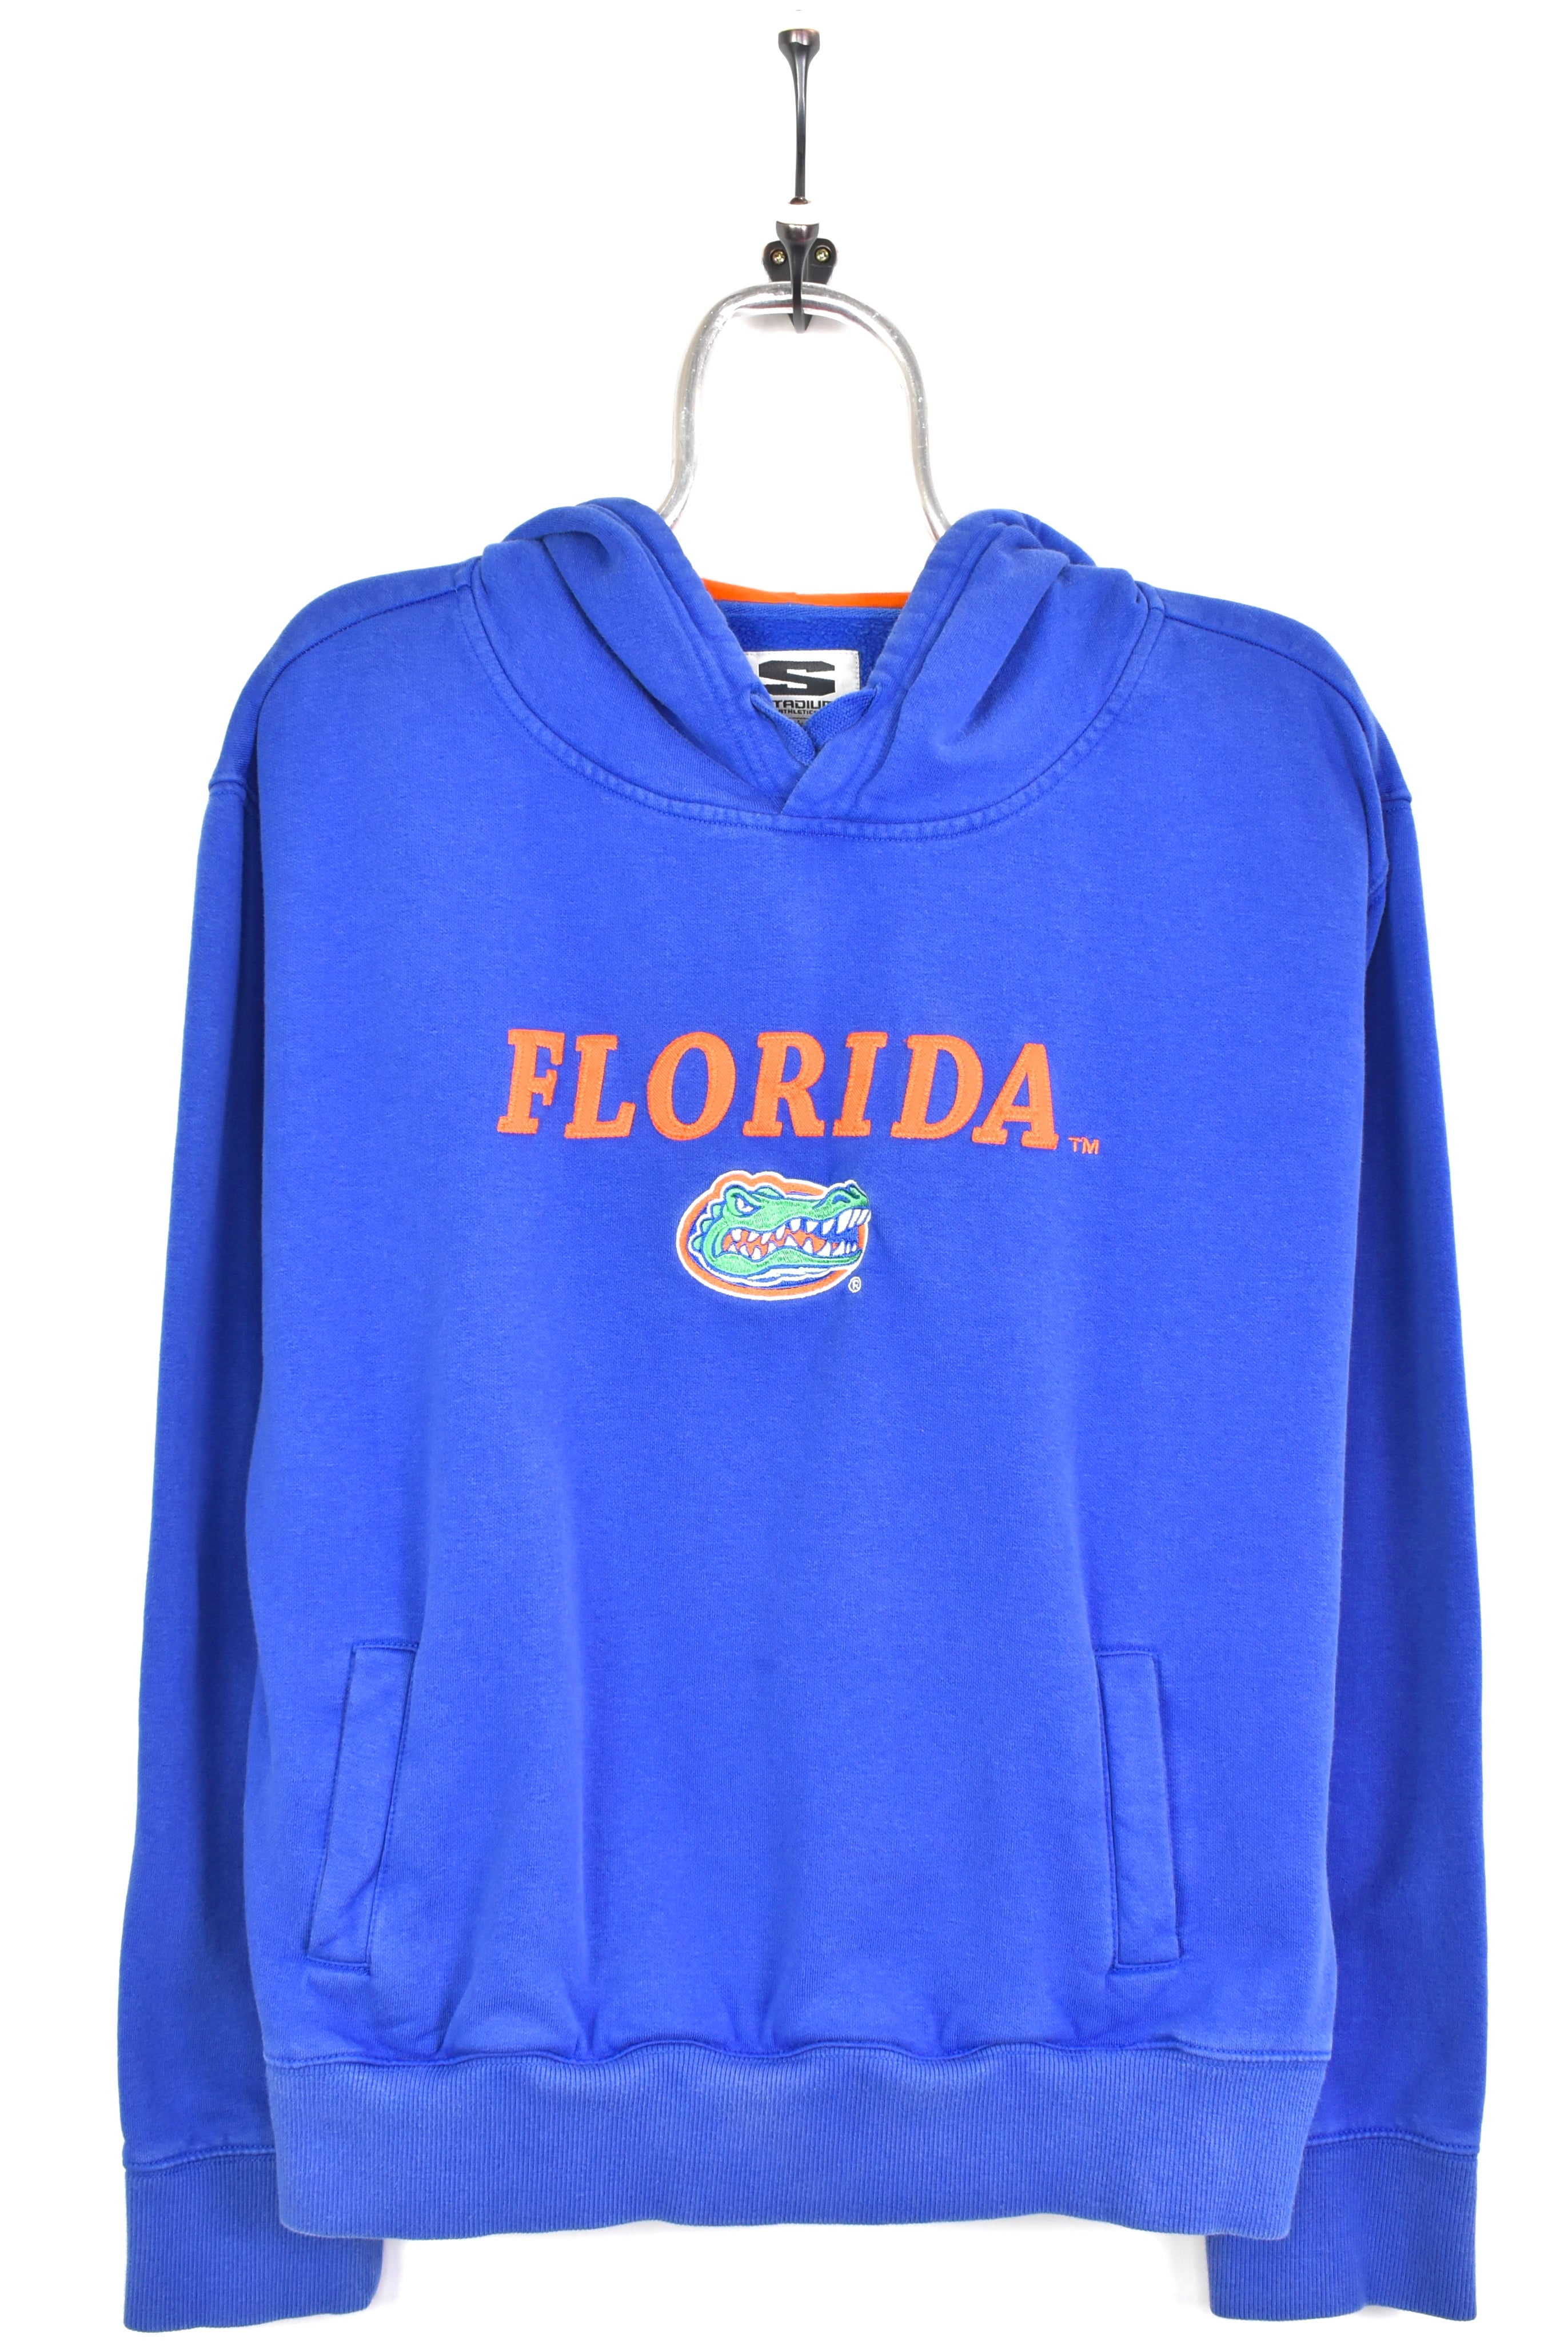 Vintage Florida University embroidered blue hoodie | Medium COLLEGE